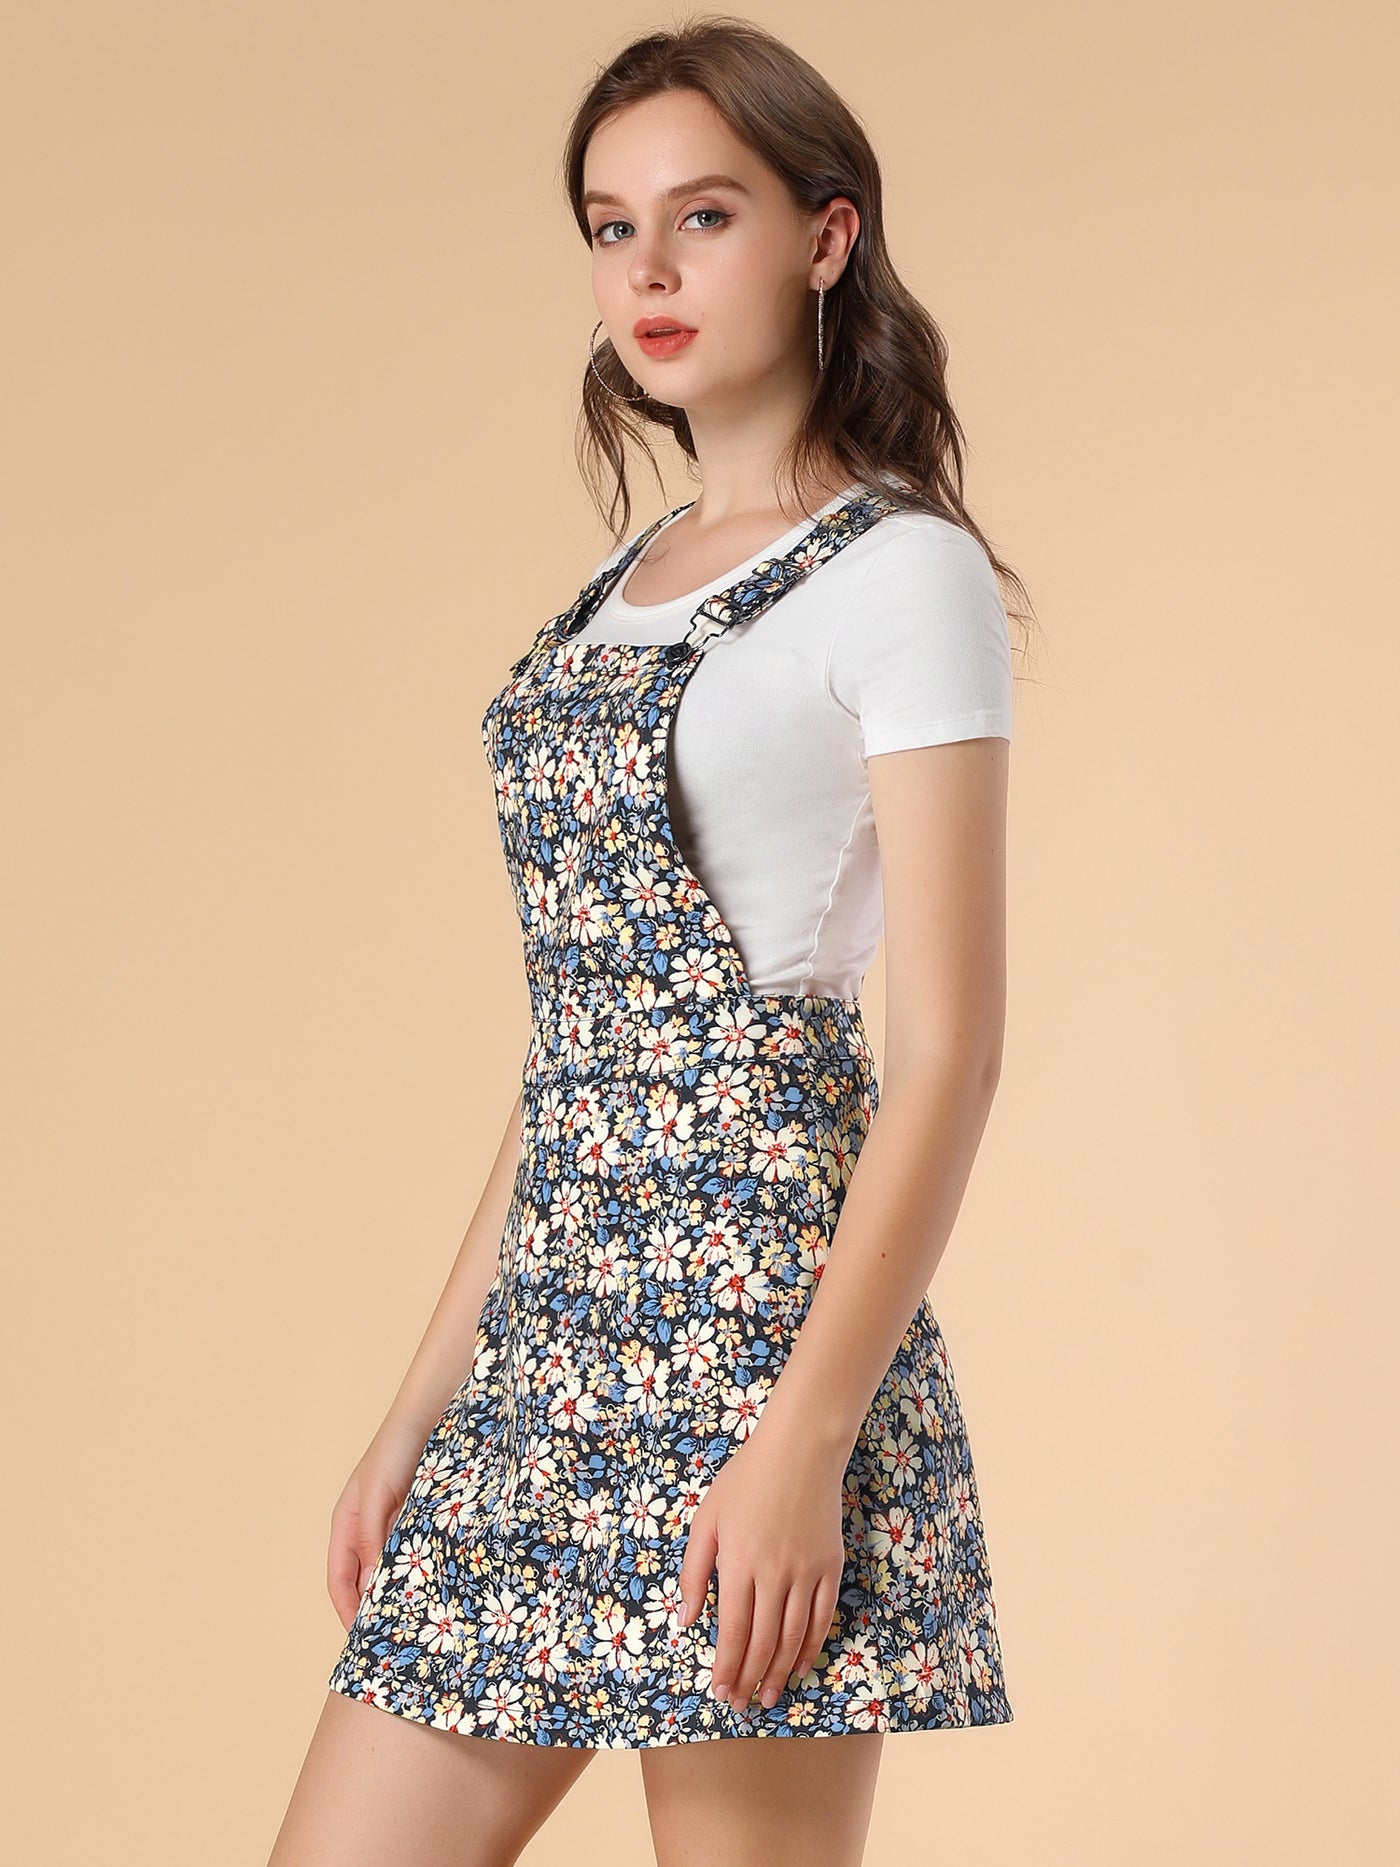 Allegra K Floral Dress Adjustable Strap Above Knee Overall Skirt